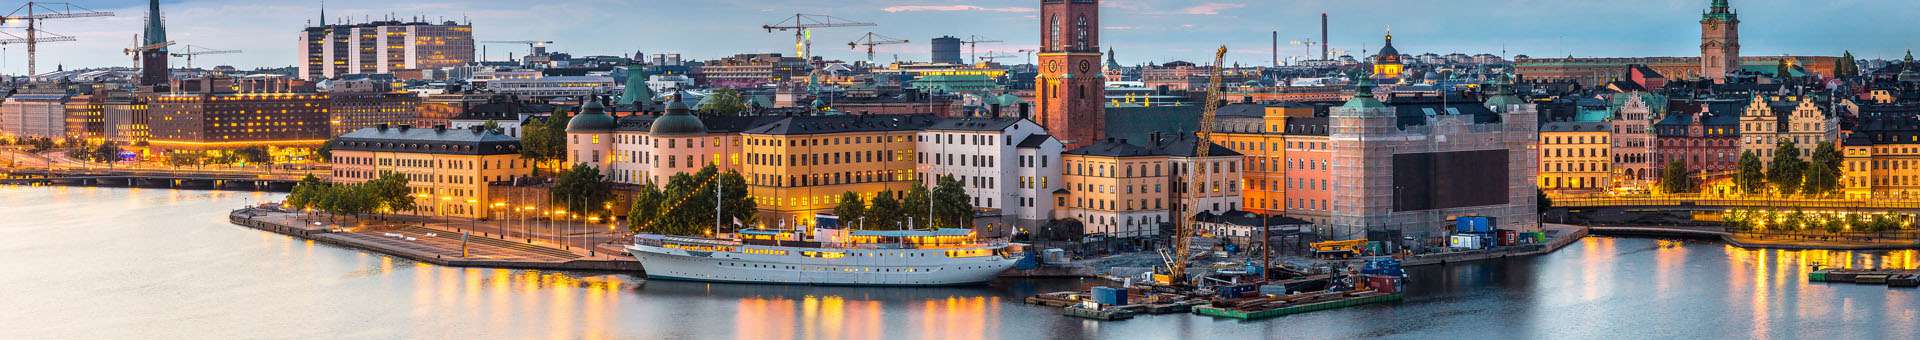 Pesquisar informações WHOIS sobre nomes de dominio na Suécia